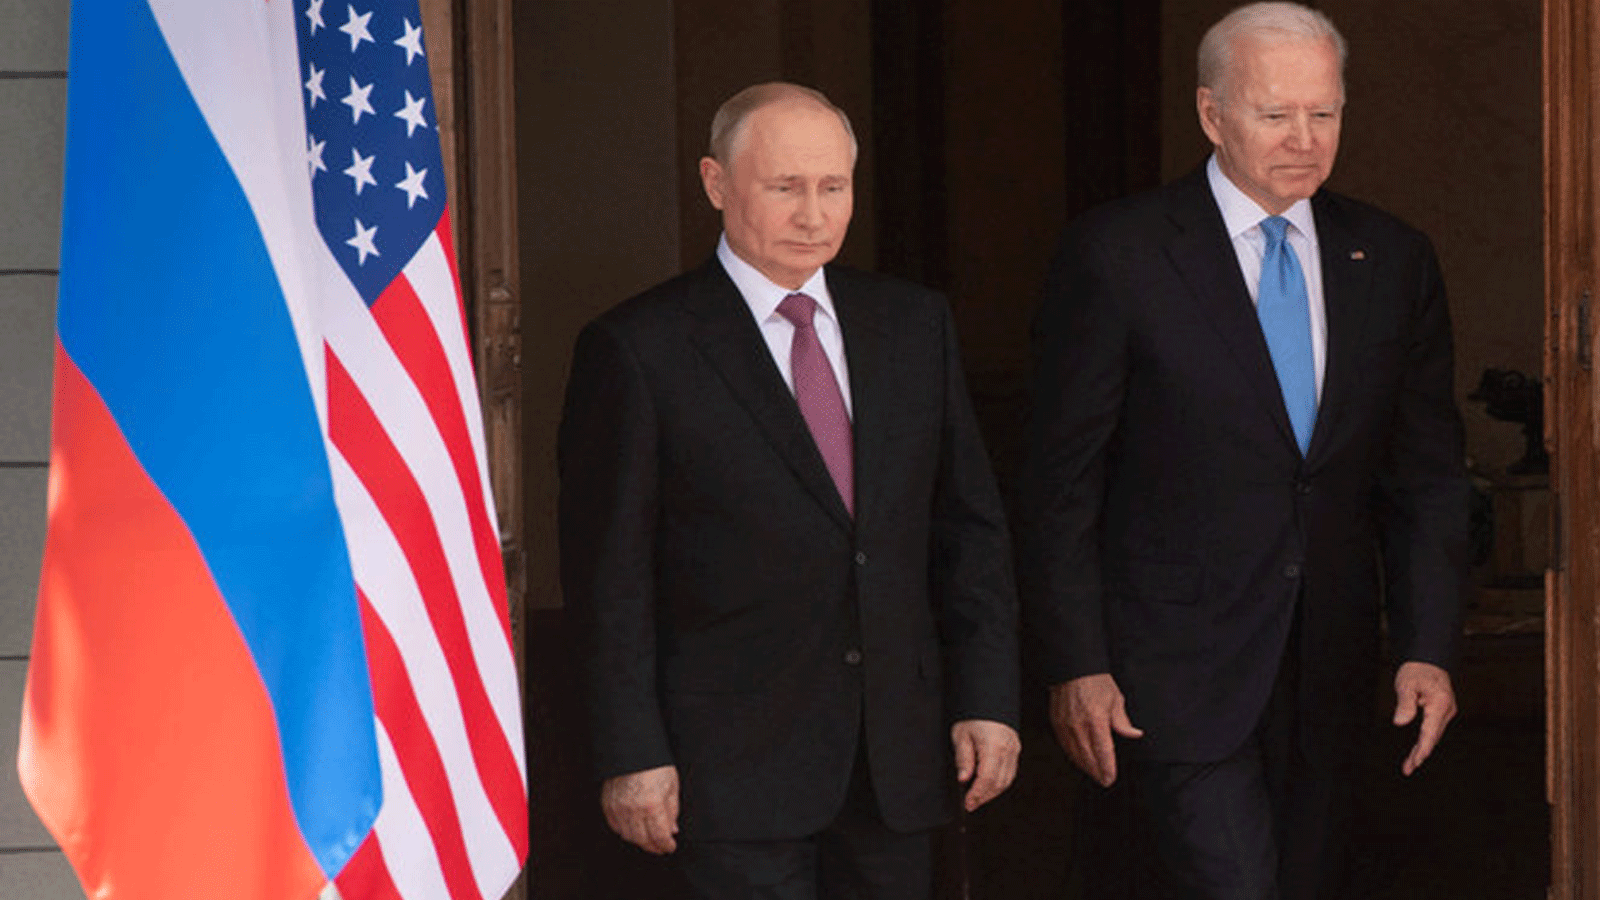 لقطة للرئيسين الأميركي والروسي جو بايدن وفلاديمير بوتين في 16 حزيران\ يونيو 2021 في جنيف